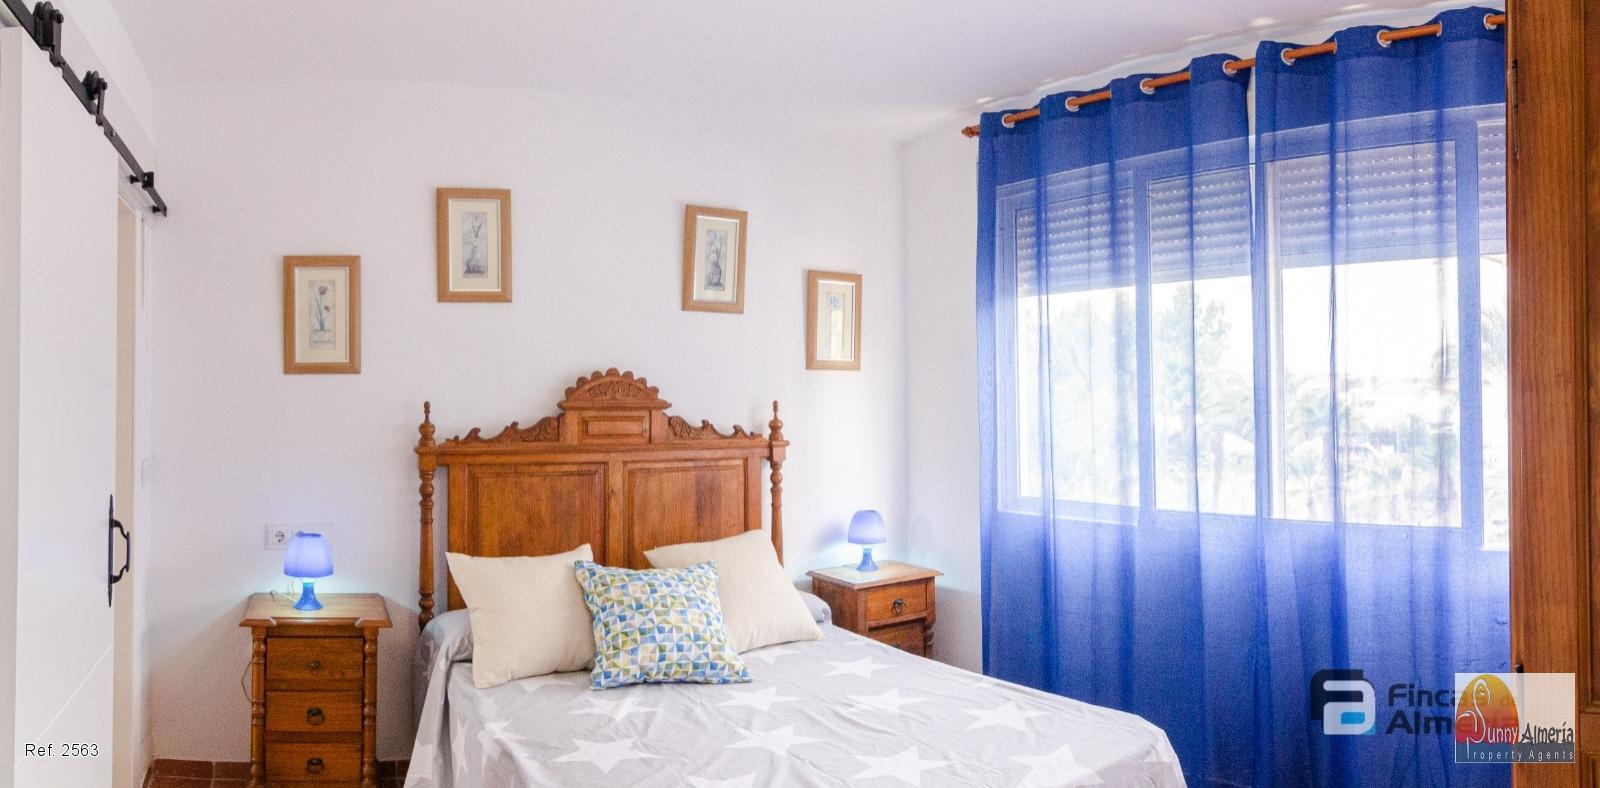 Apartment for rent in Centro de Urba. (Roquetas de Mar), 700 €/month